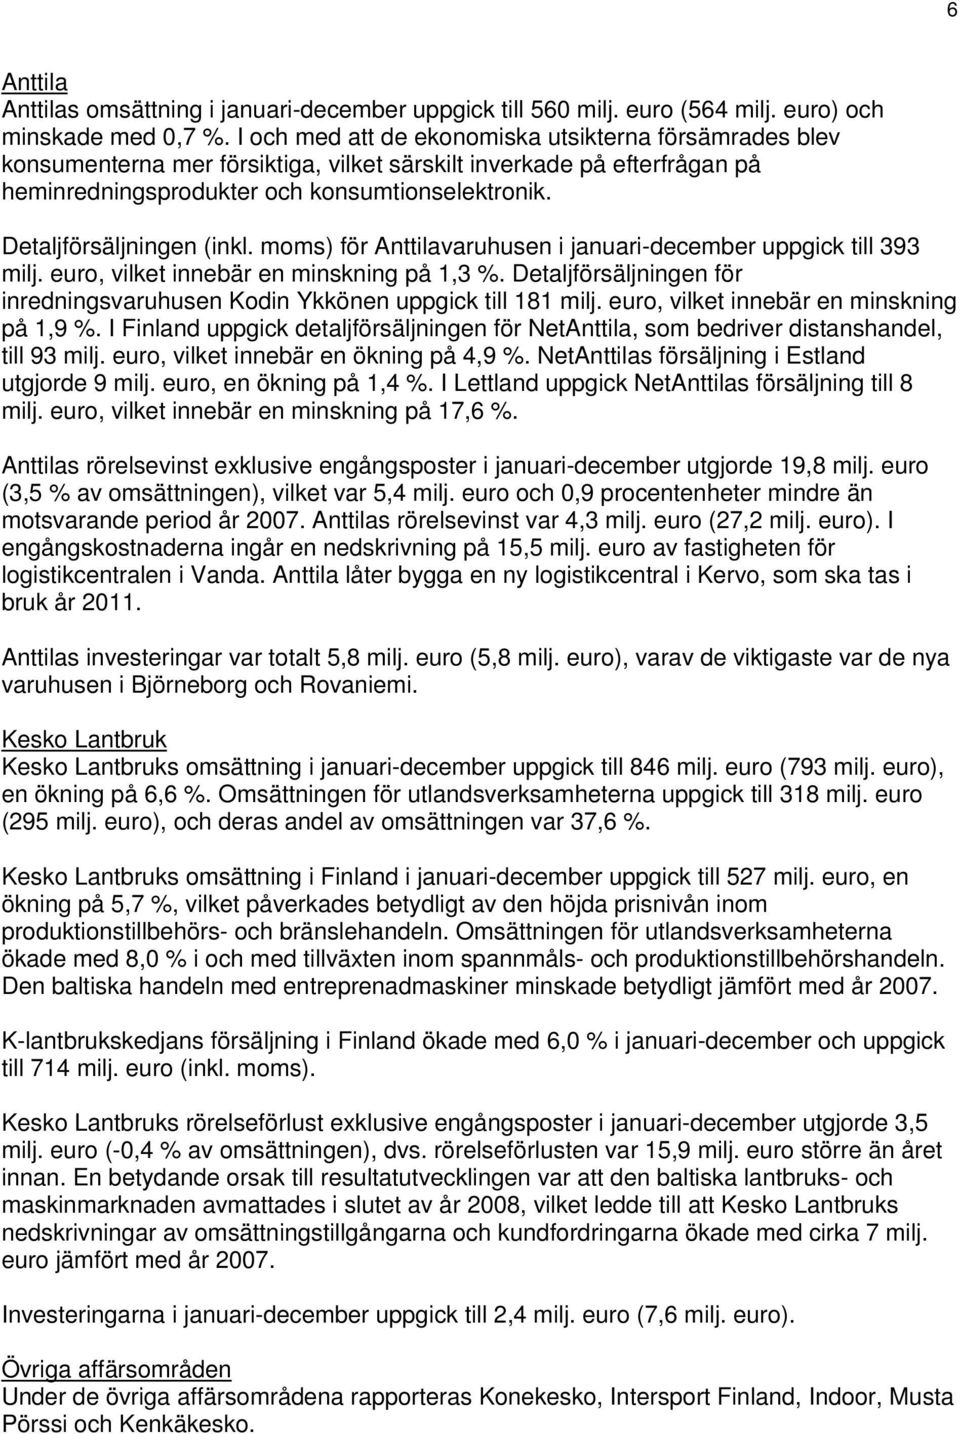 Detaljförsäljningen (inkl. moms) för Anttilavaruhusen i januari-december uppgick till 393 milj., vilket innebär en minskning på 1,3 %.